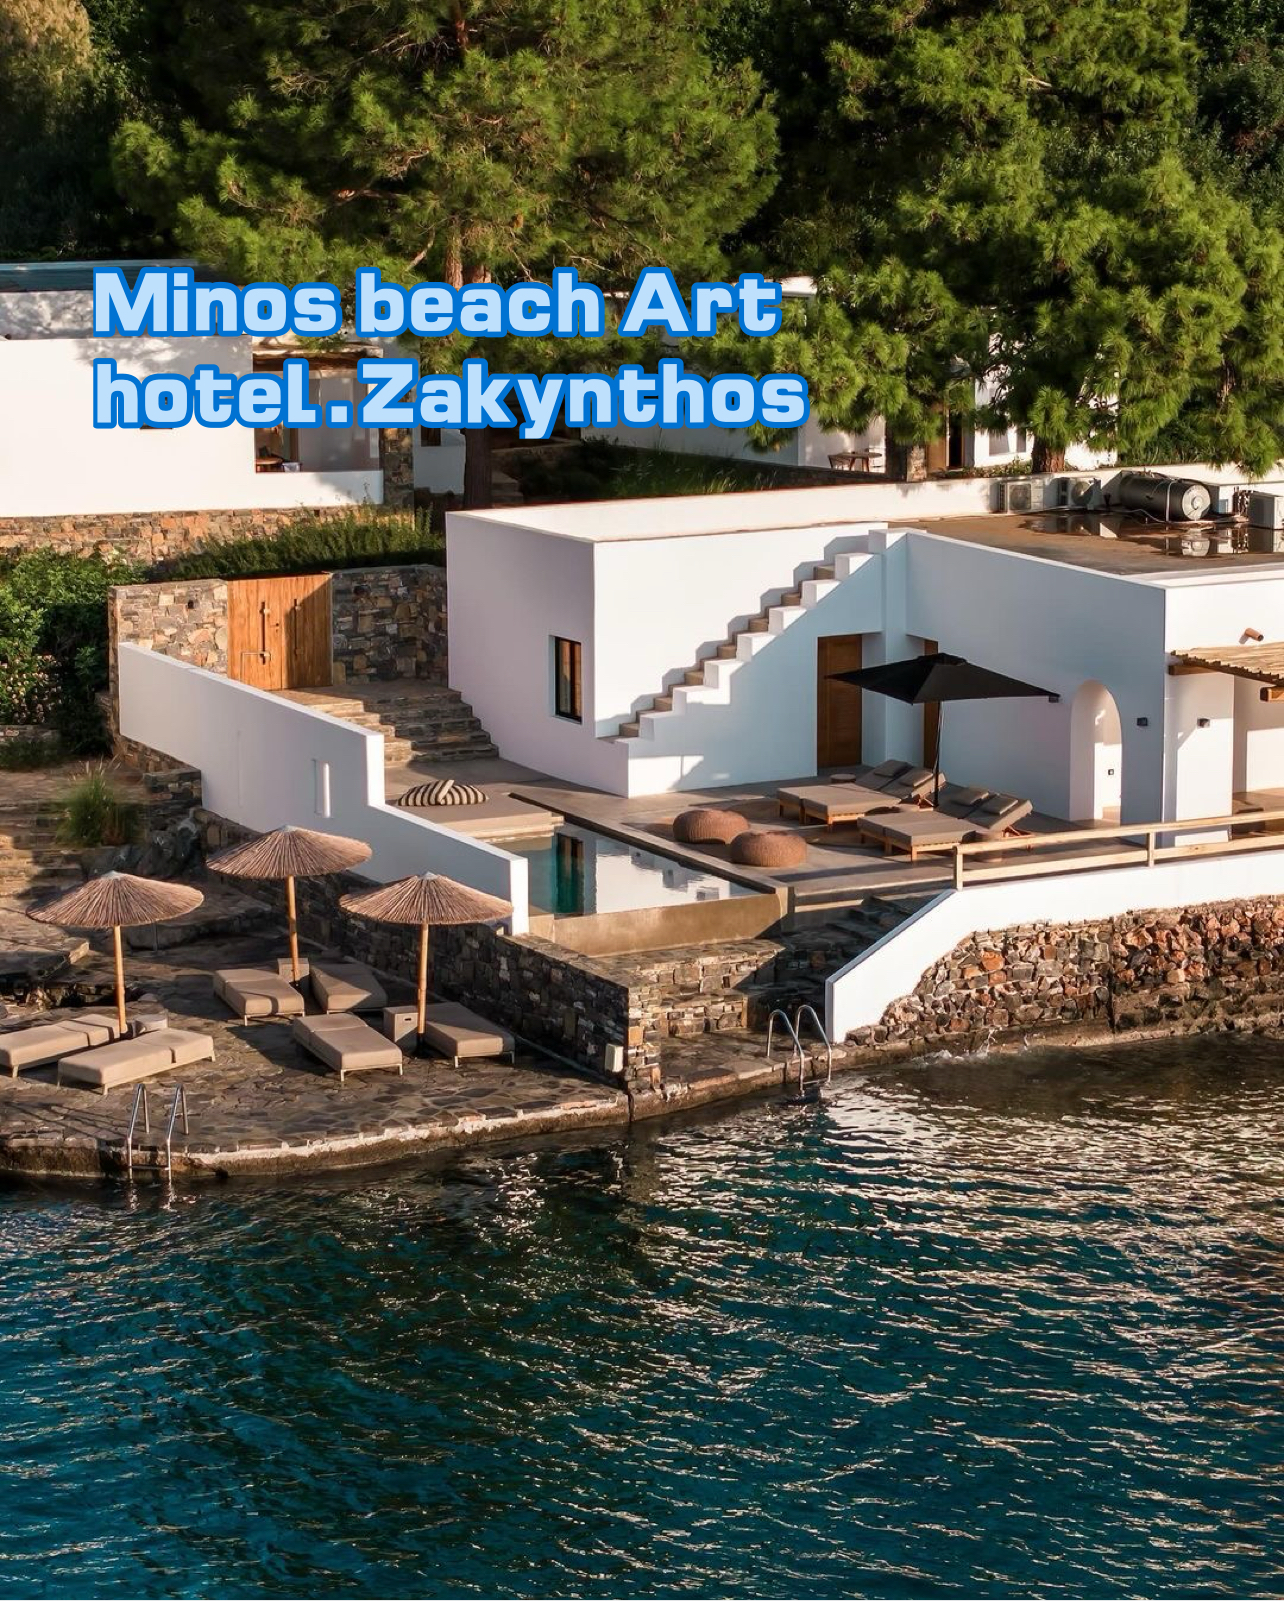 Minos beach Art hotel.Zakyntho